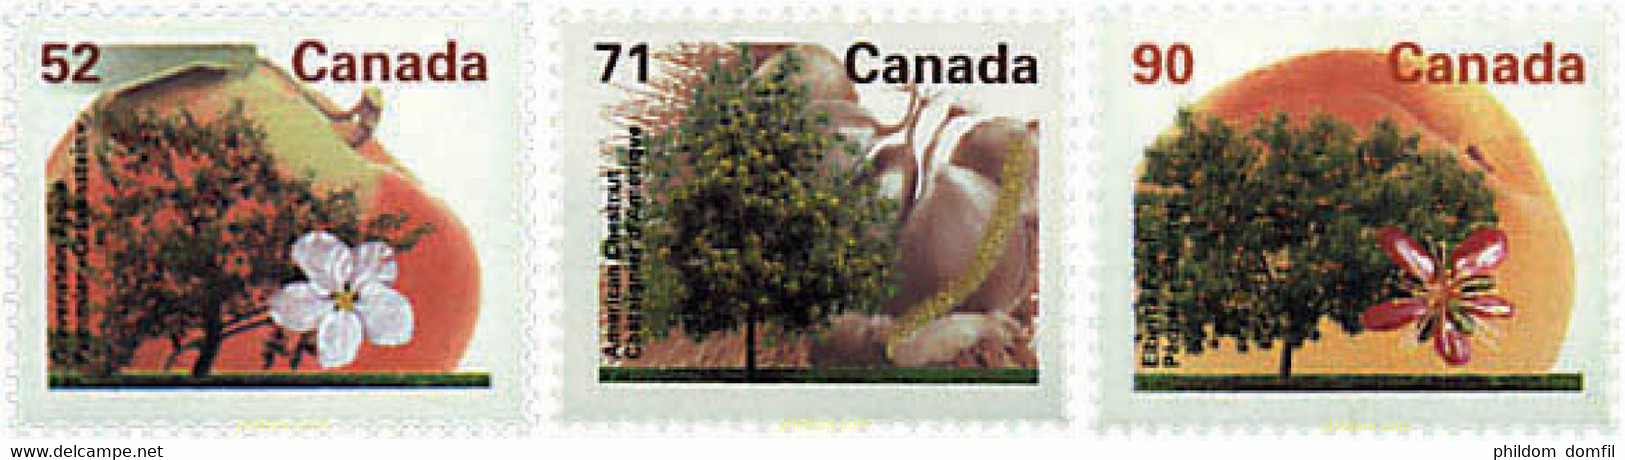 97898 MNH CANADA 1995 ARBOLES FRUTALES DE CANADA - Bádminton